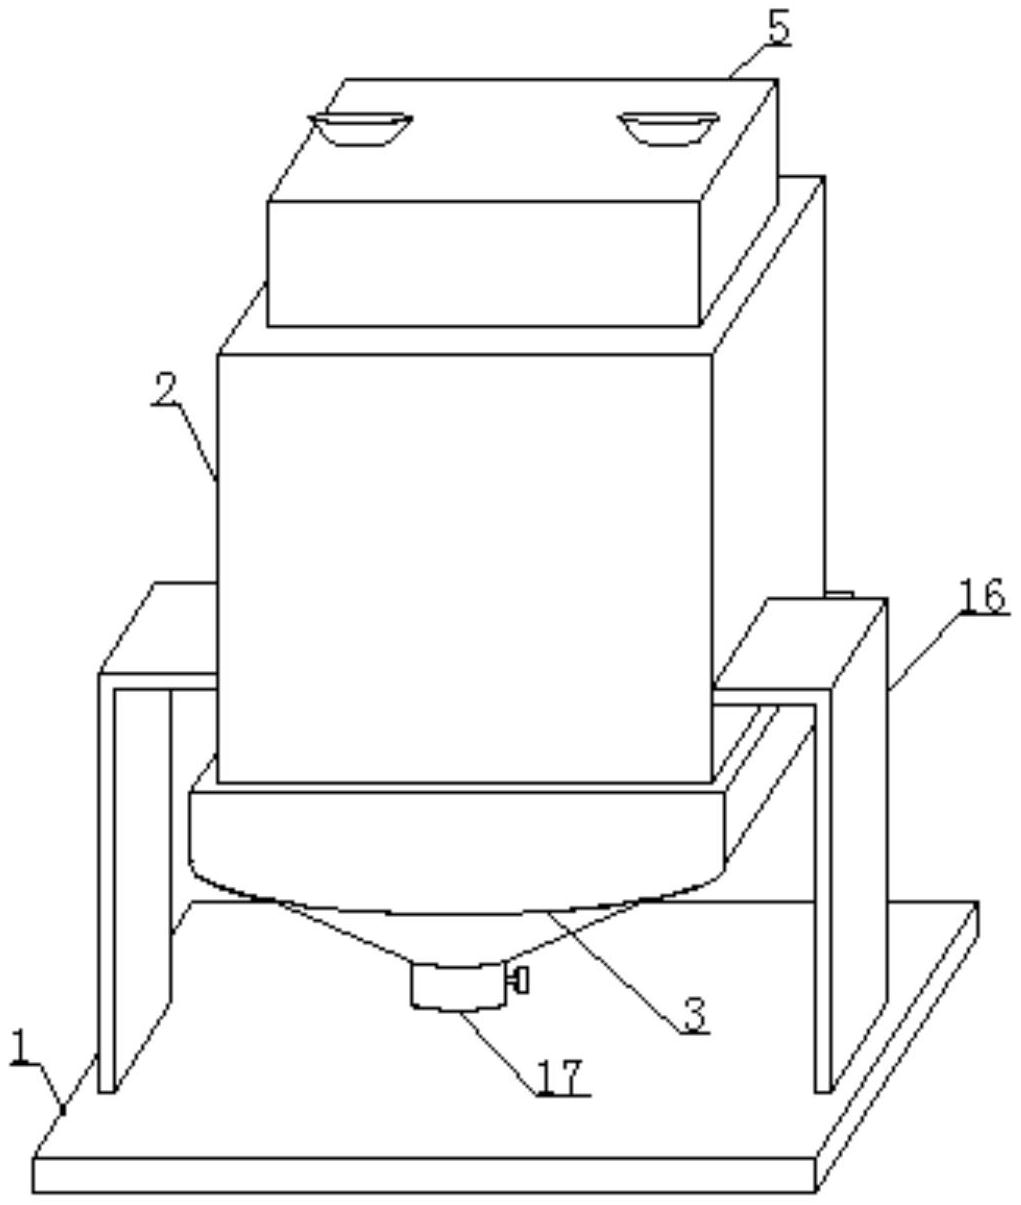 一种连续生产晶型碳酸稀土的装置专利图